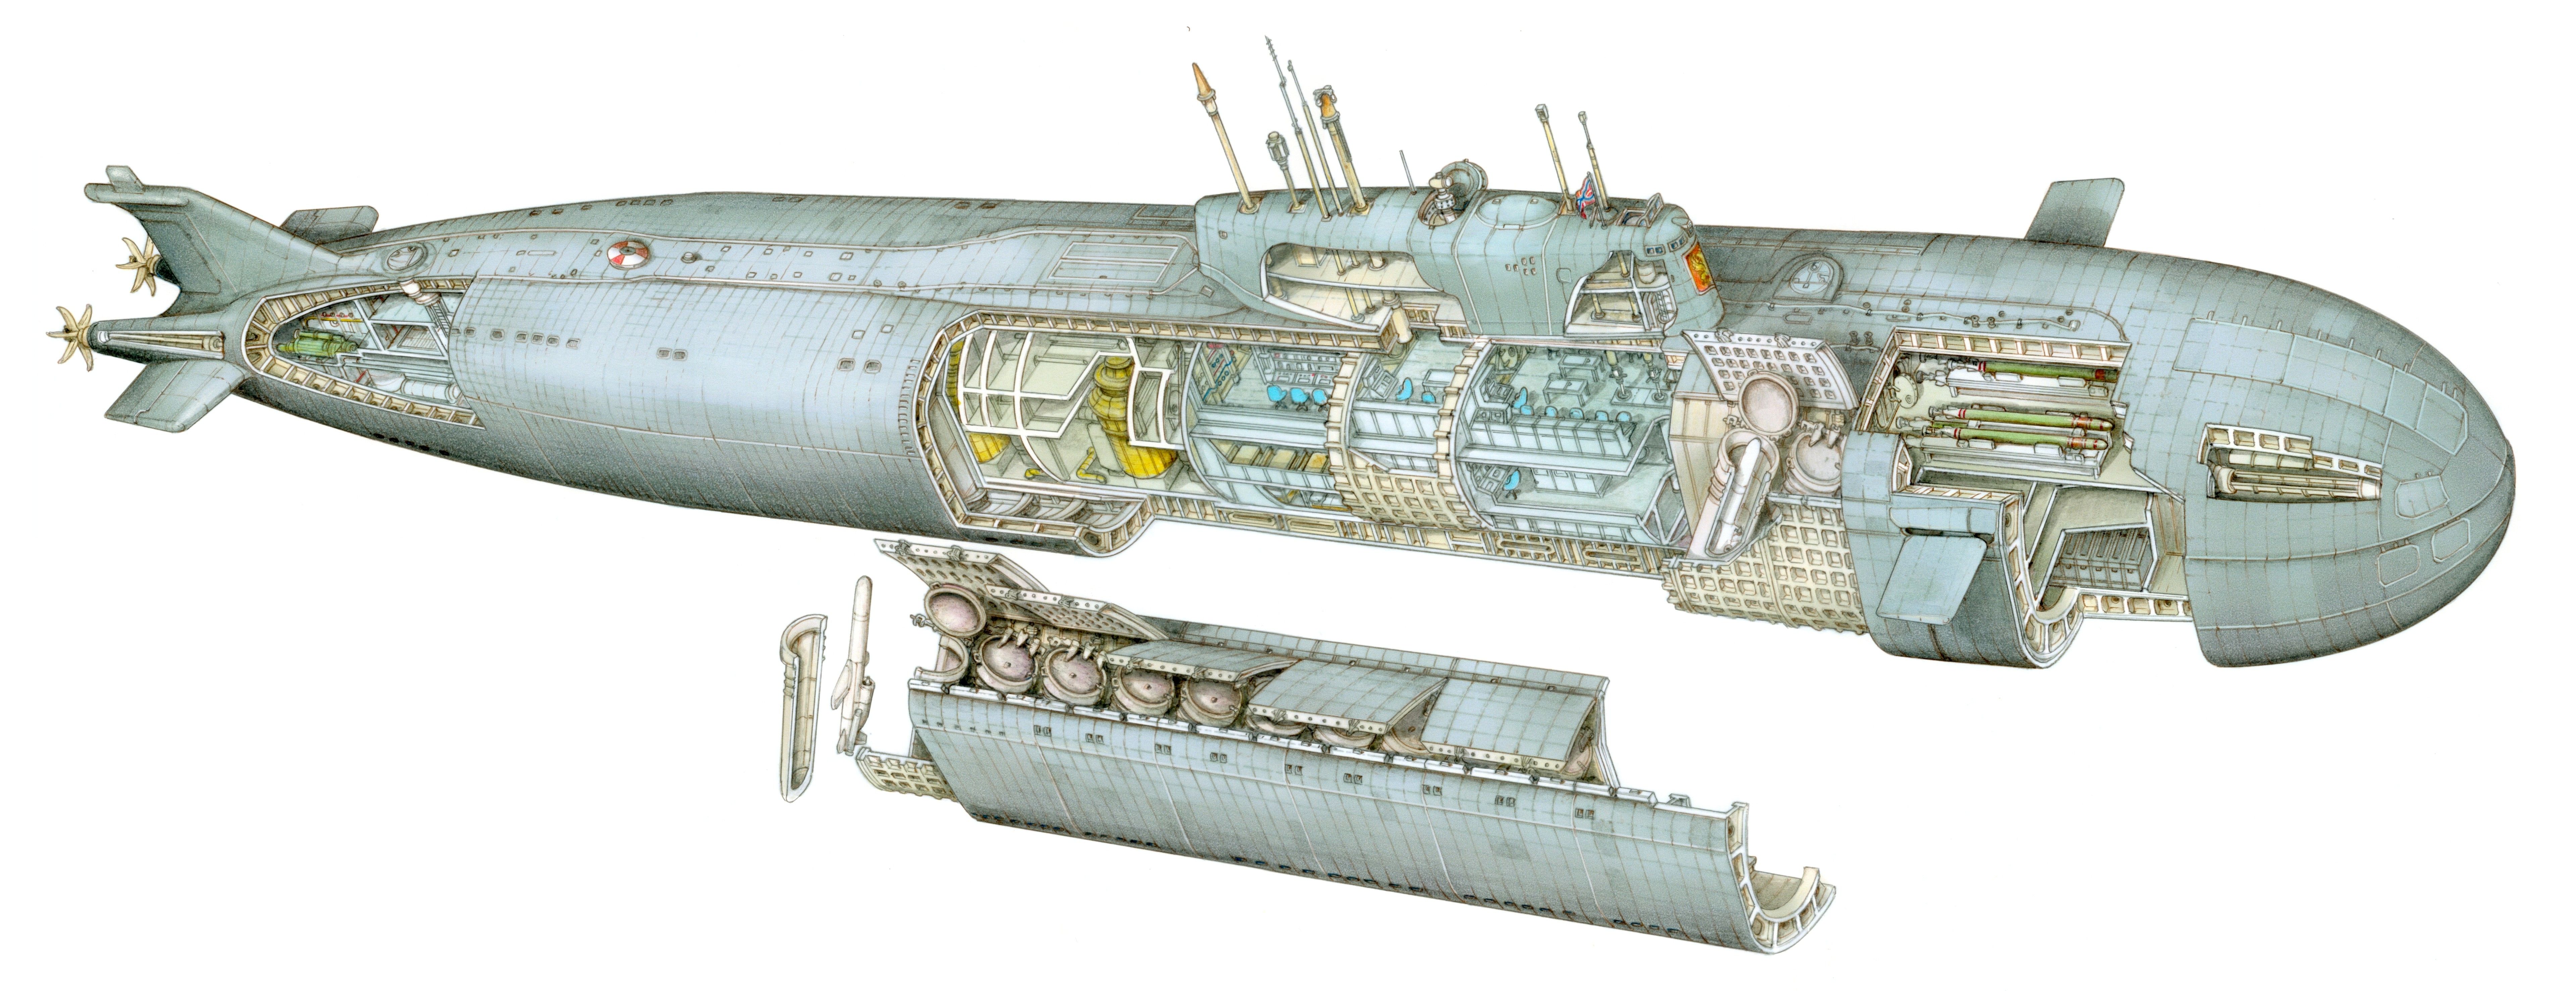 kursk-submarine